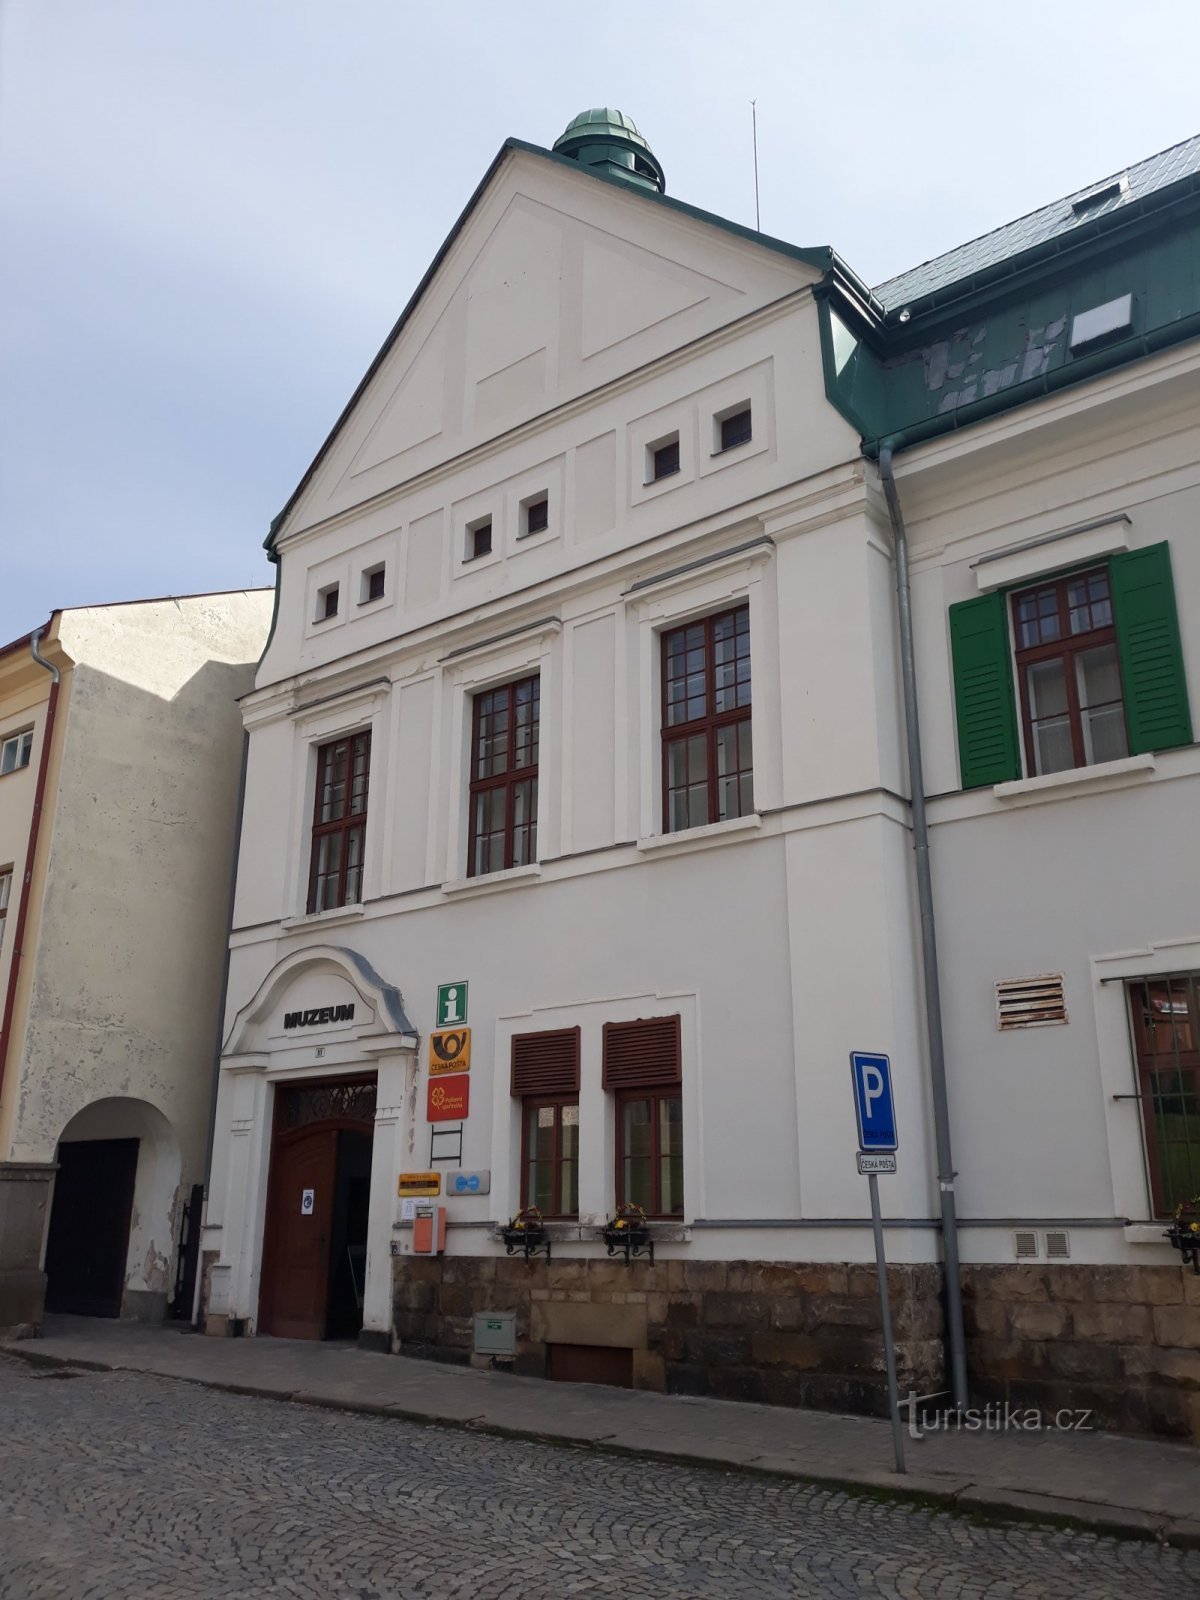 Žacléř - centro de información